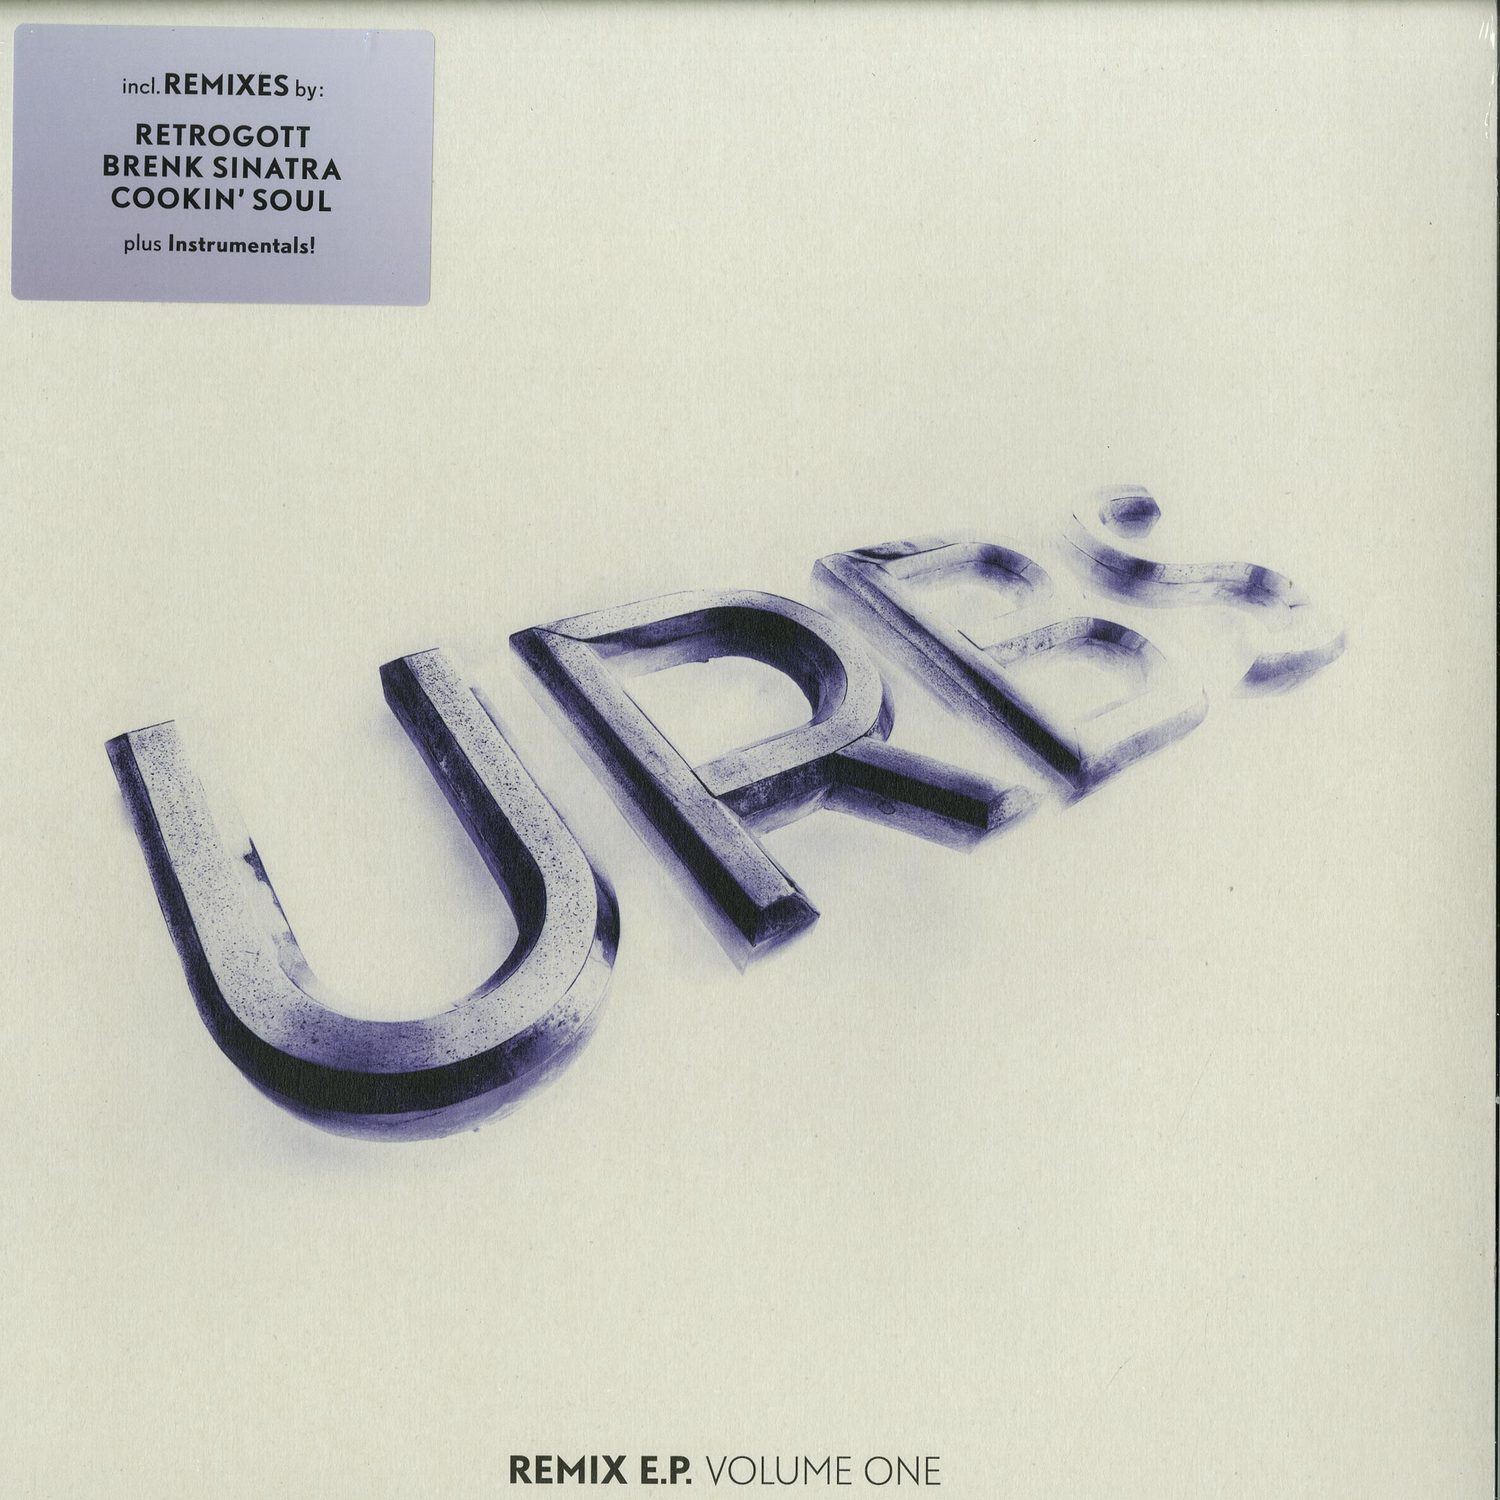 URBS - REMIX EP1 